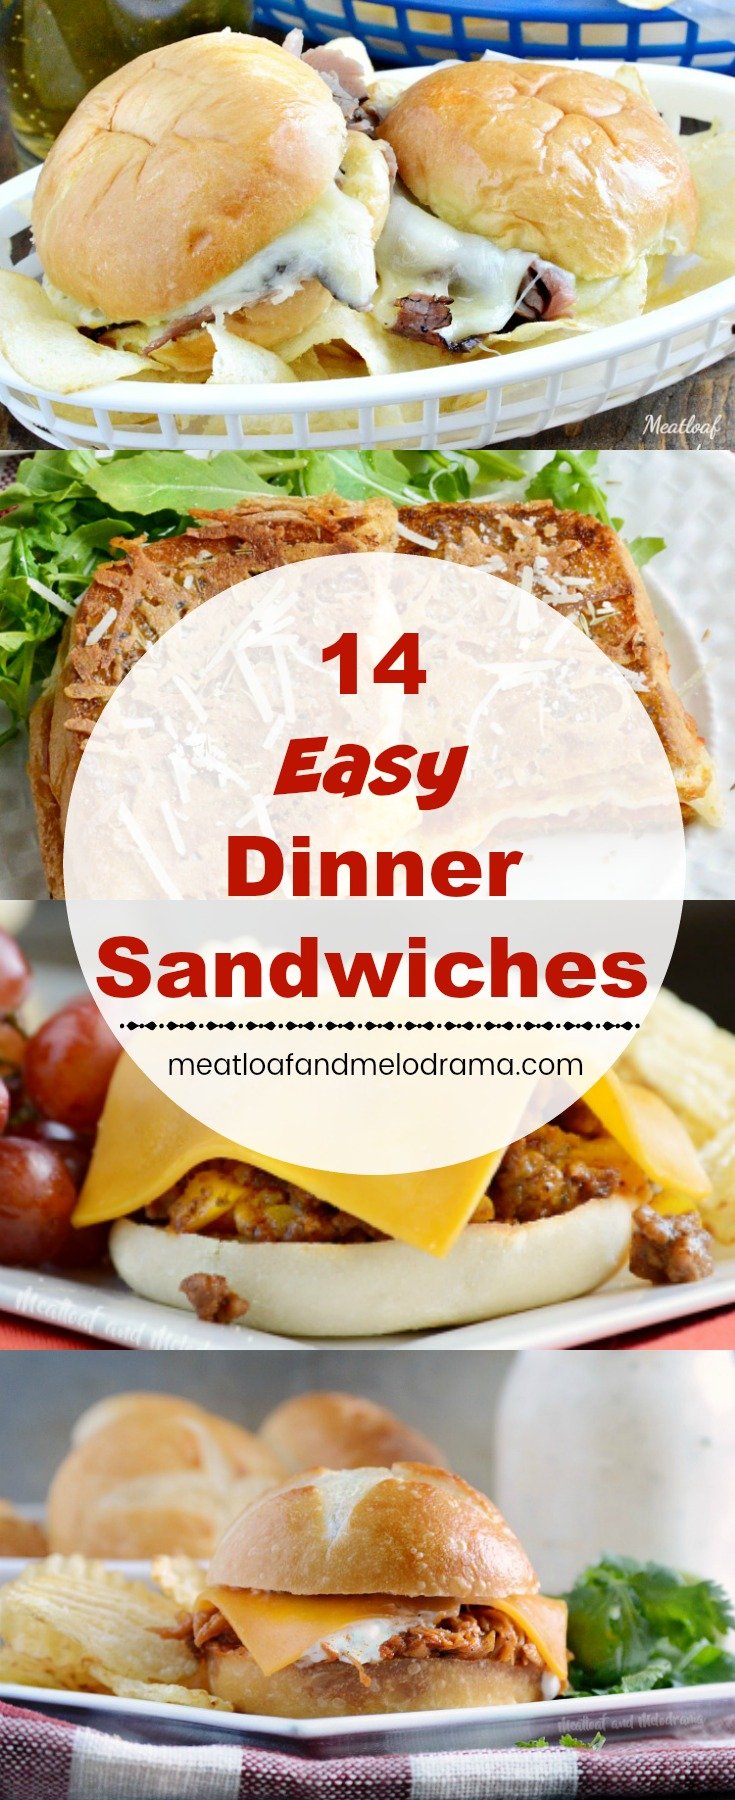 14 Easy Dinner Sandwiches